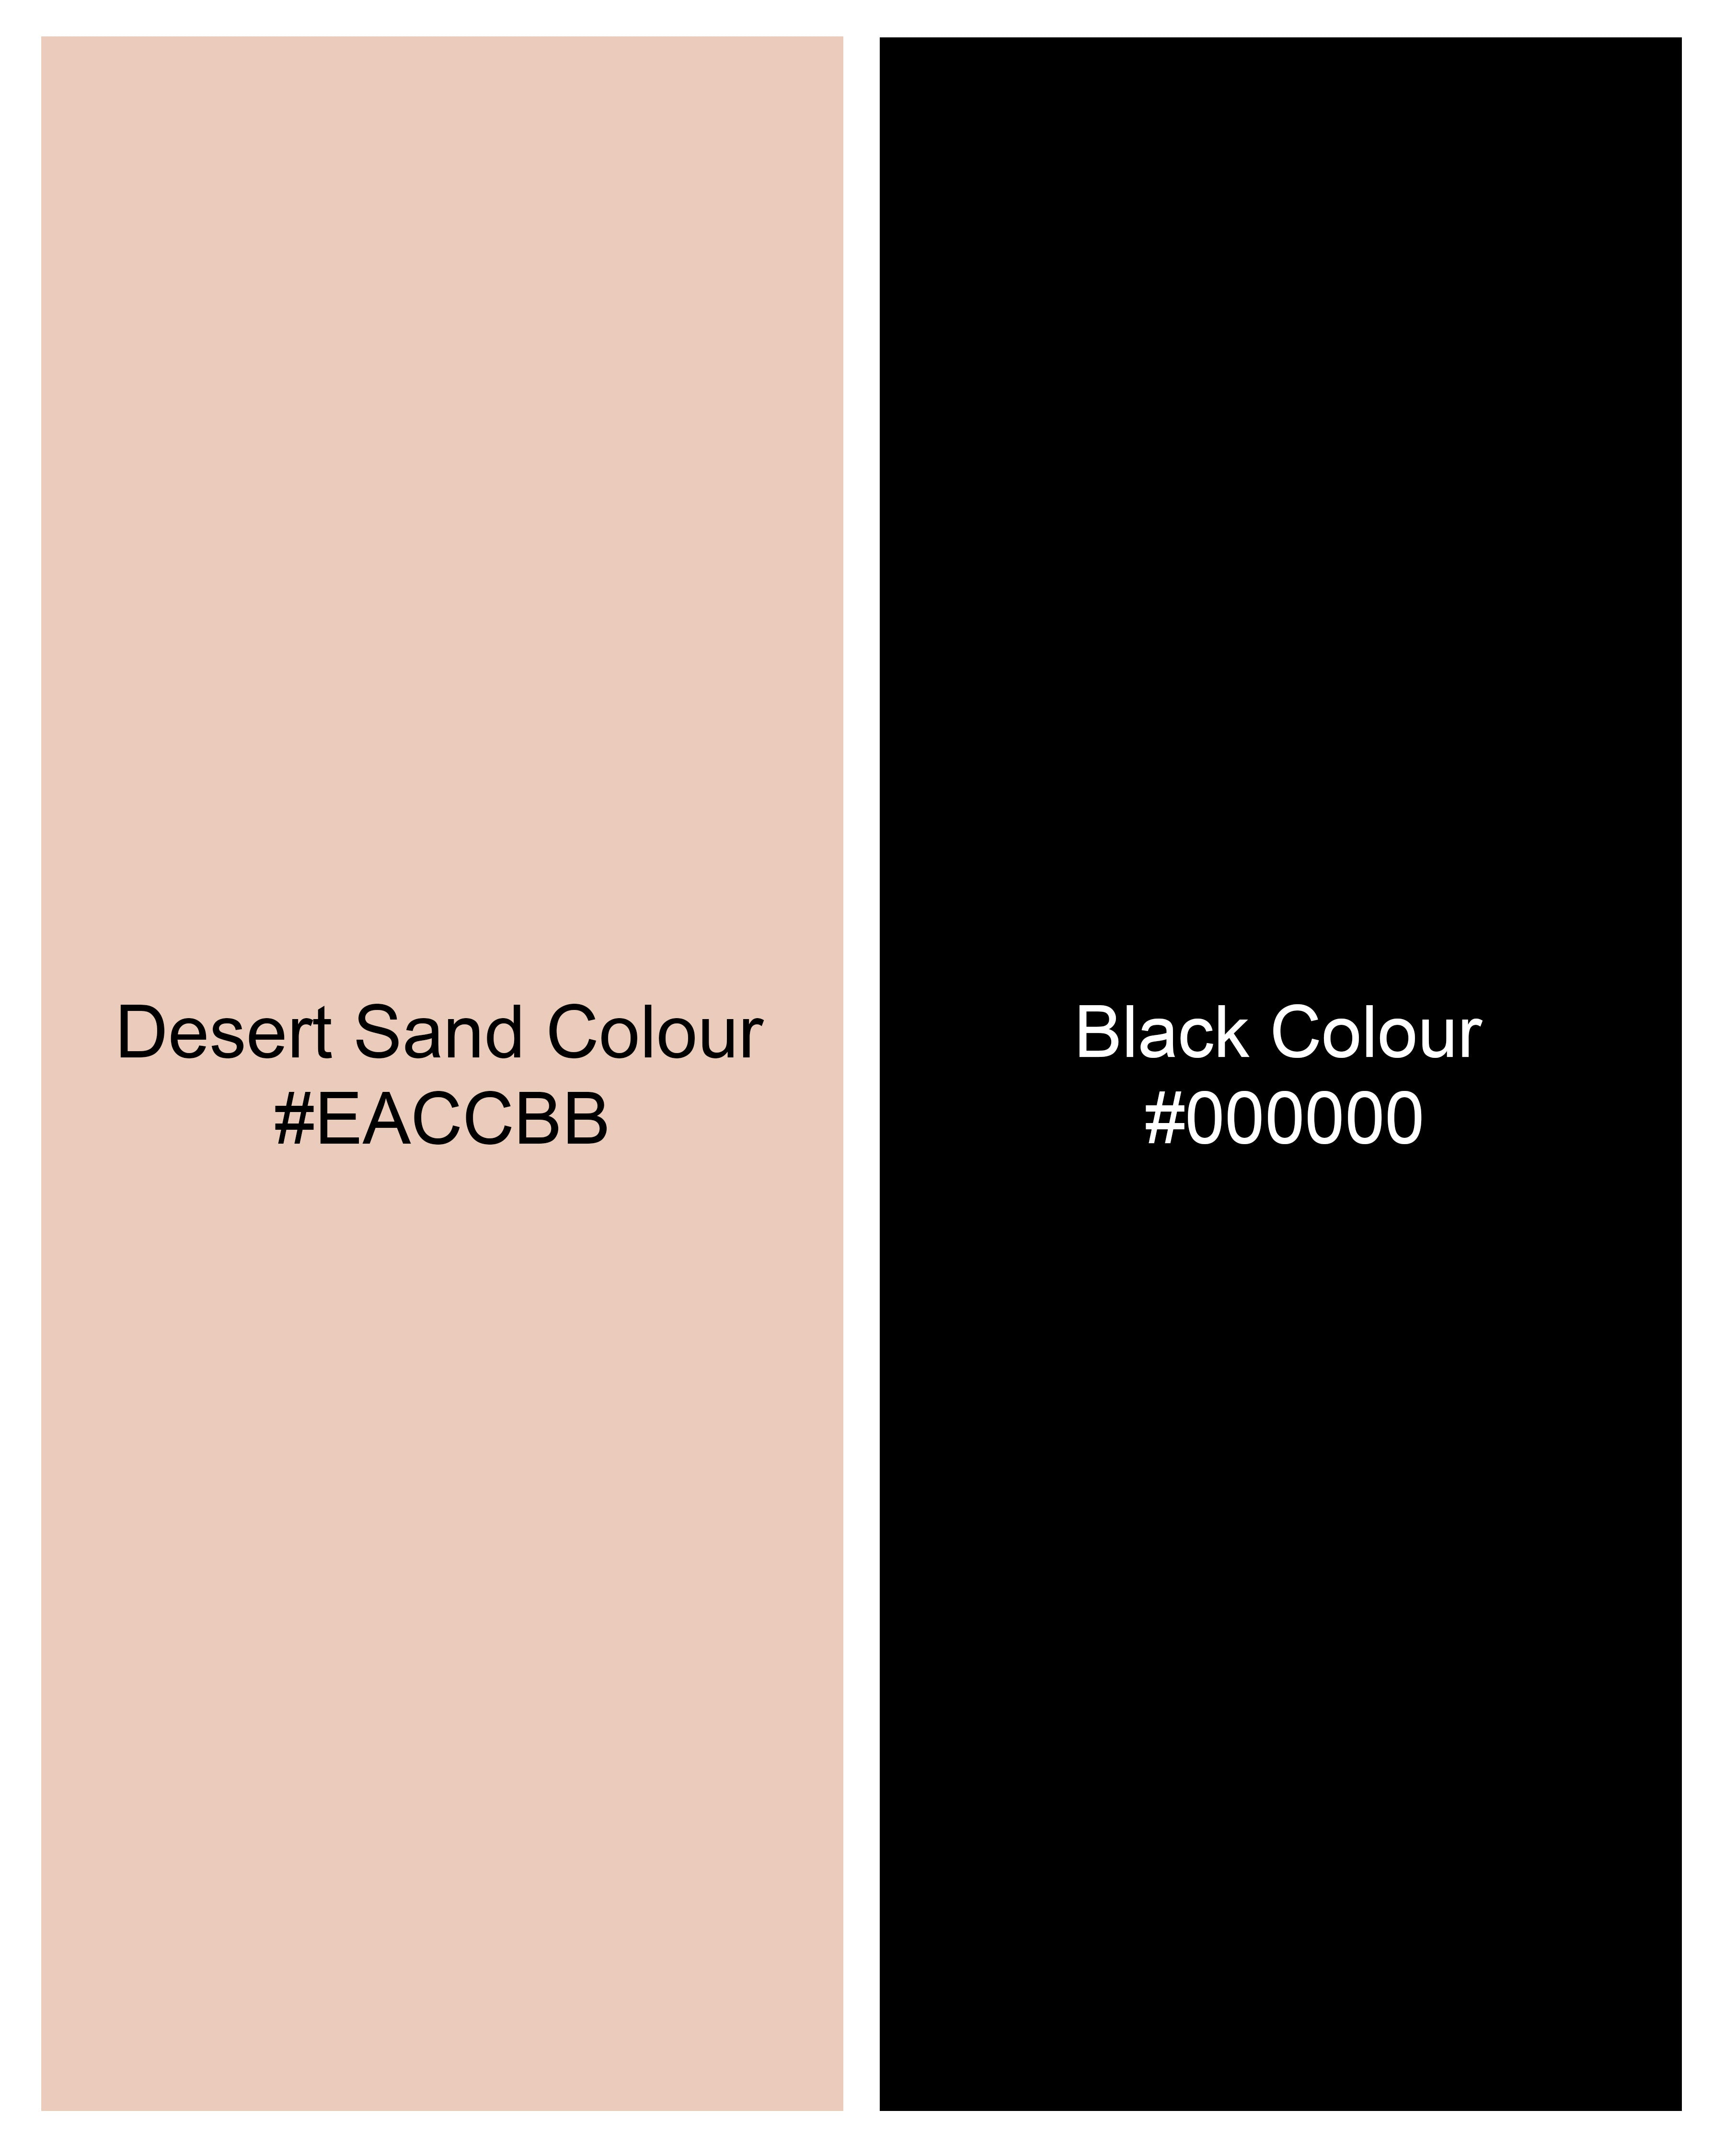 Desert Sand Beige Spider Hand-Painted Organic Cotton T-Shirt TS082-W01-S, TS082-W01-M, TS082-W01-L, TS082-W01-XL, TS082-W01-XXL 